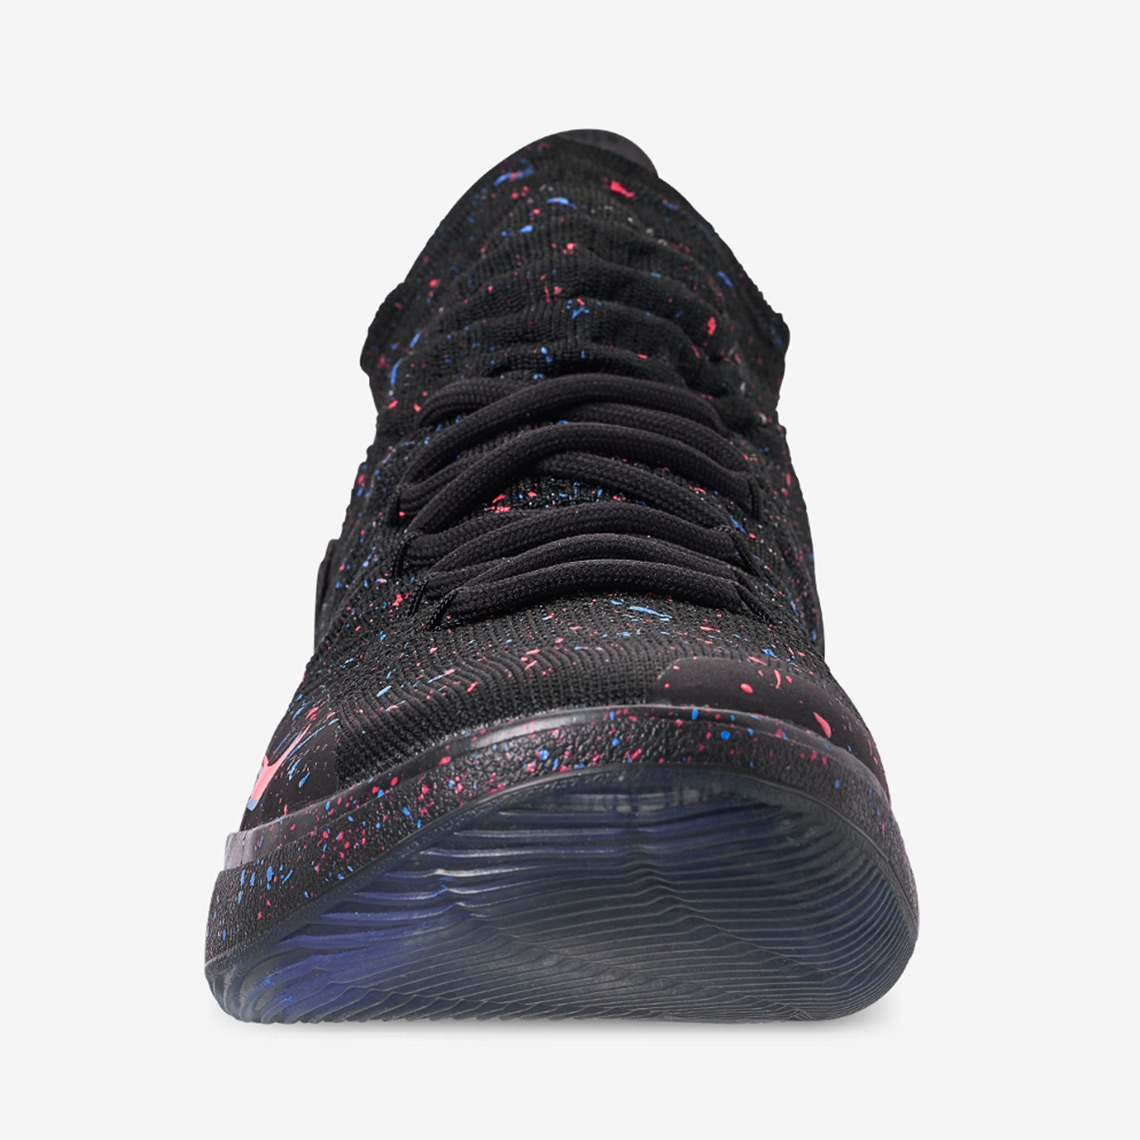 altura Rendición Experimentar Nike KD 11 Confetti AO2604-007 Release Info | SneakerNews.com